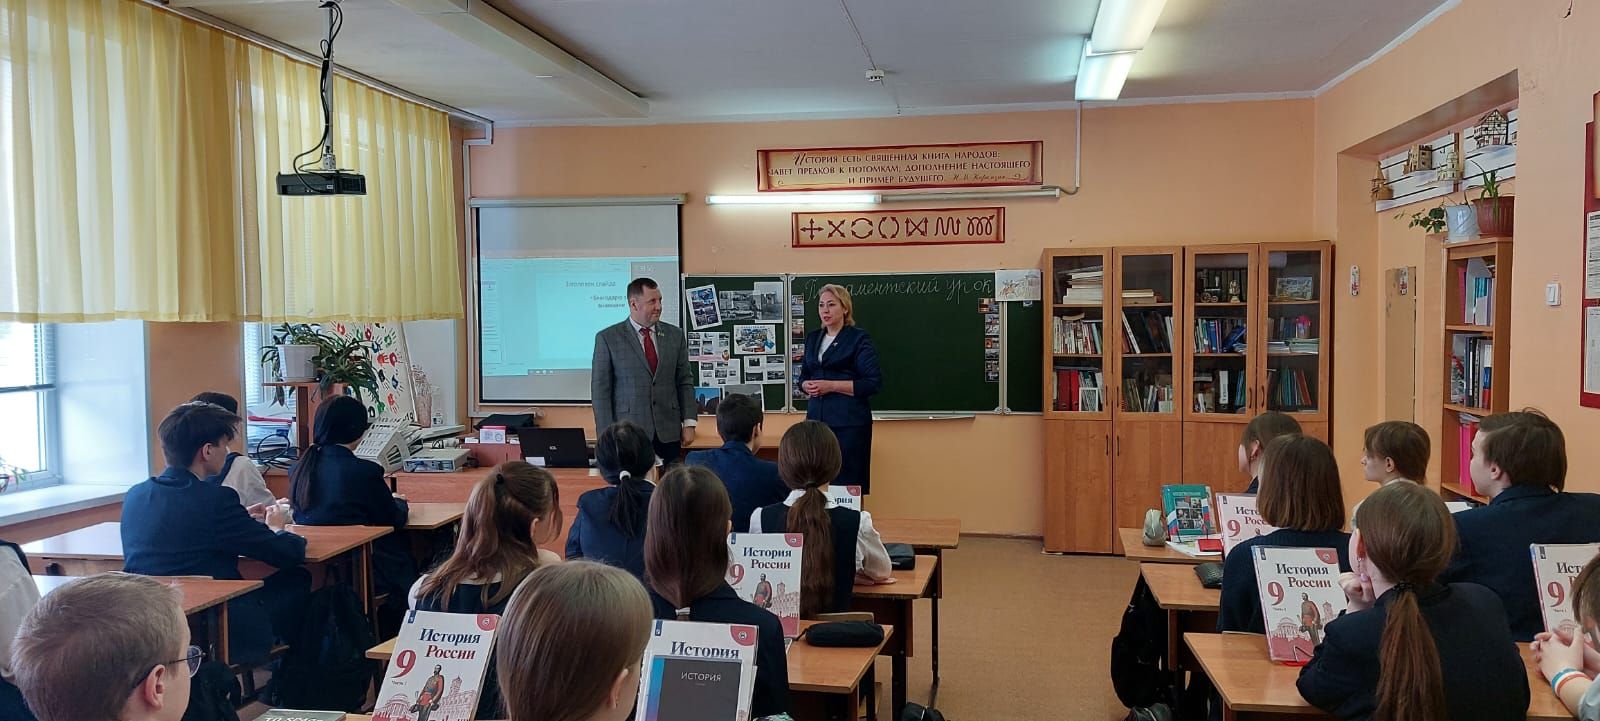 Челнинские депутаты провели школьникам парламентские уроки